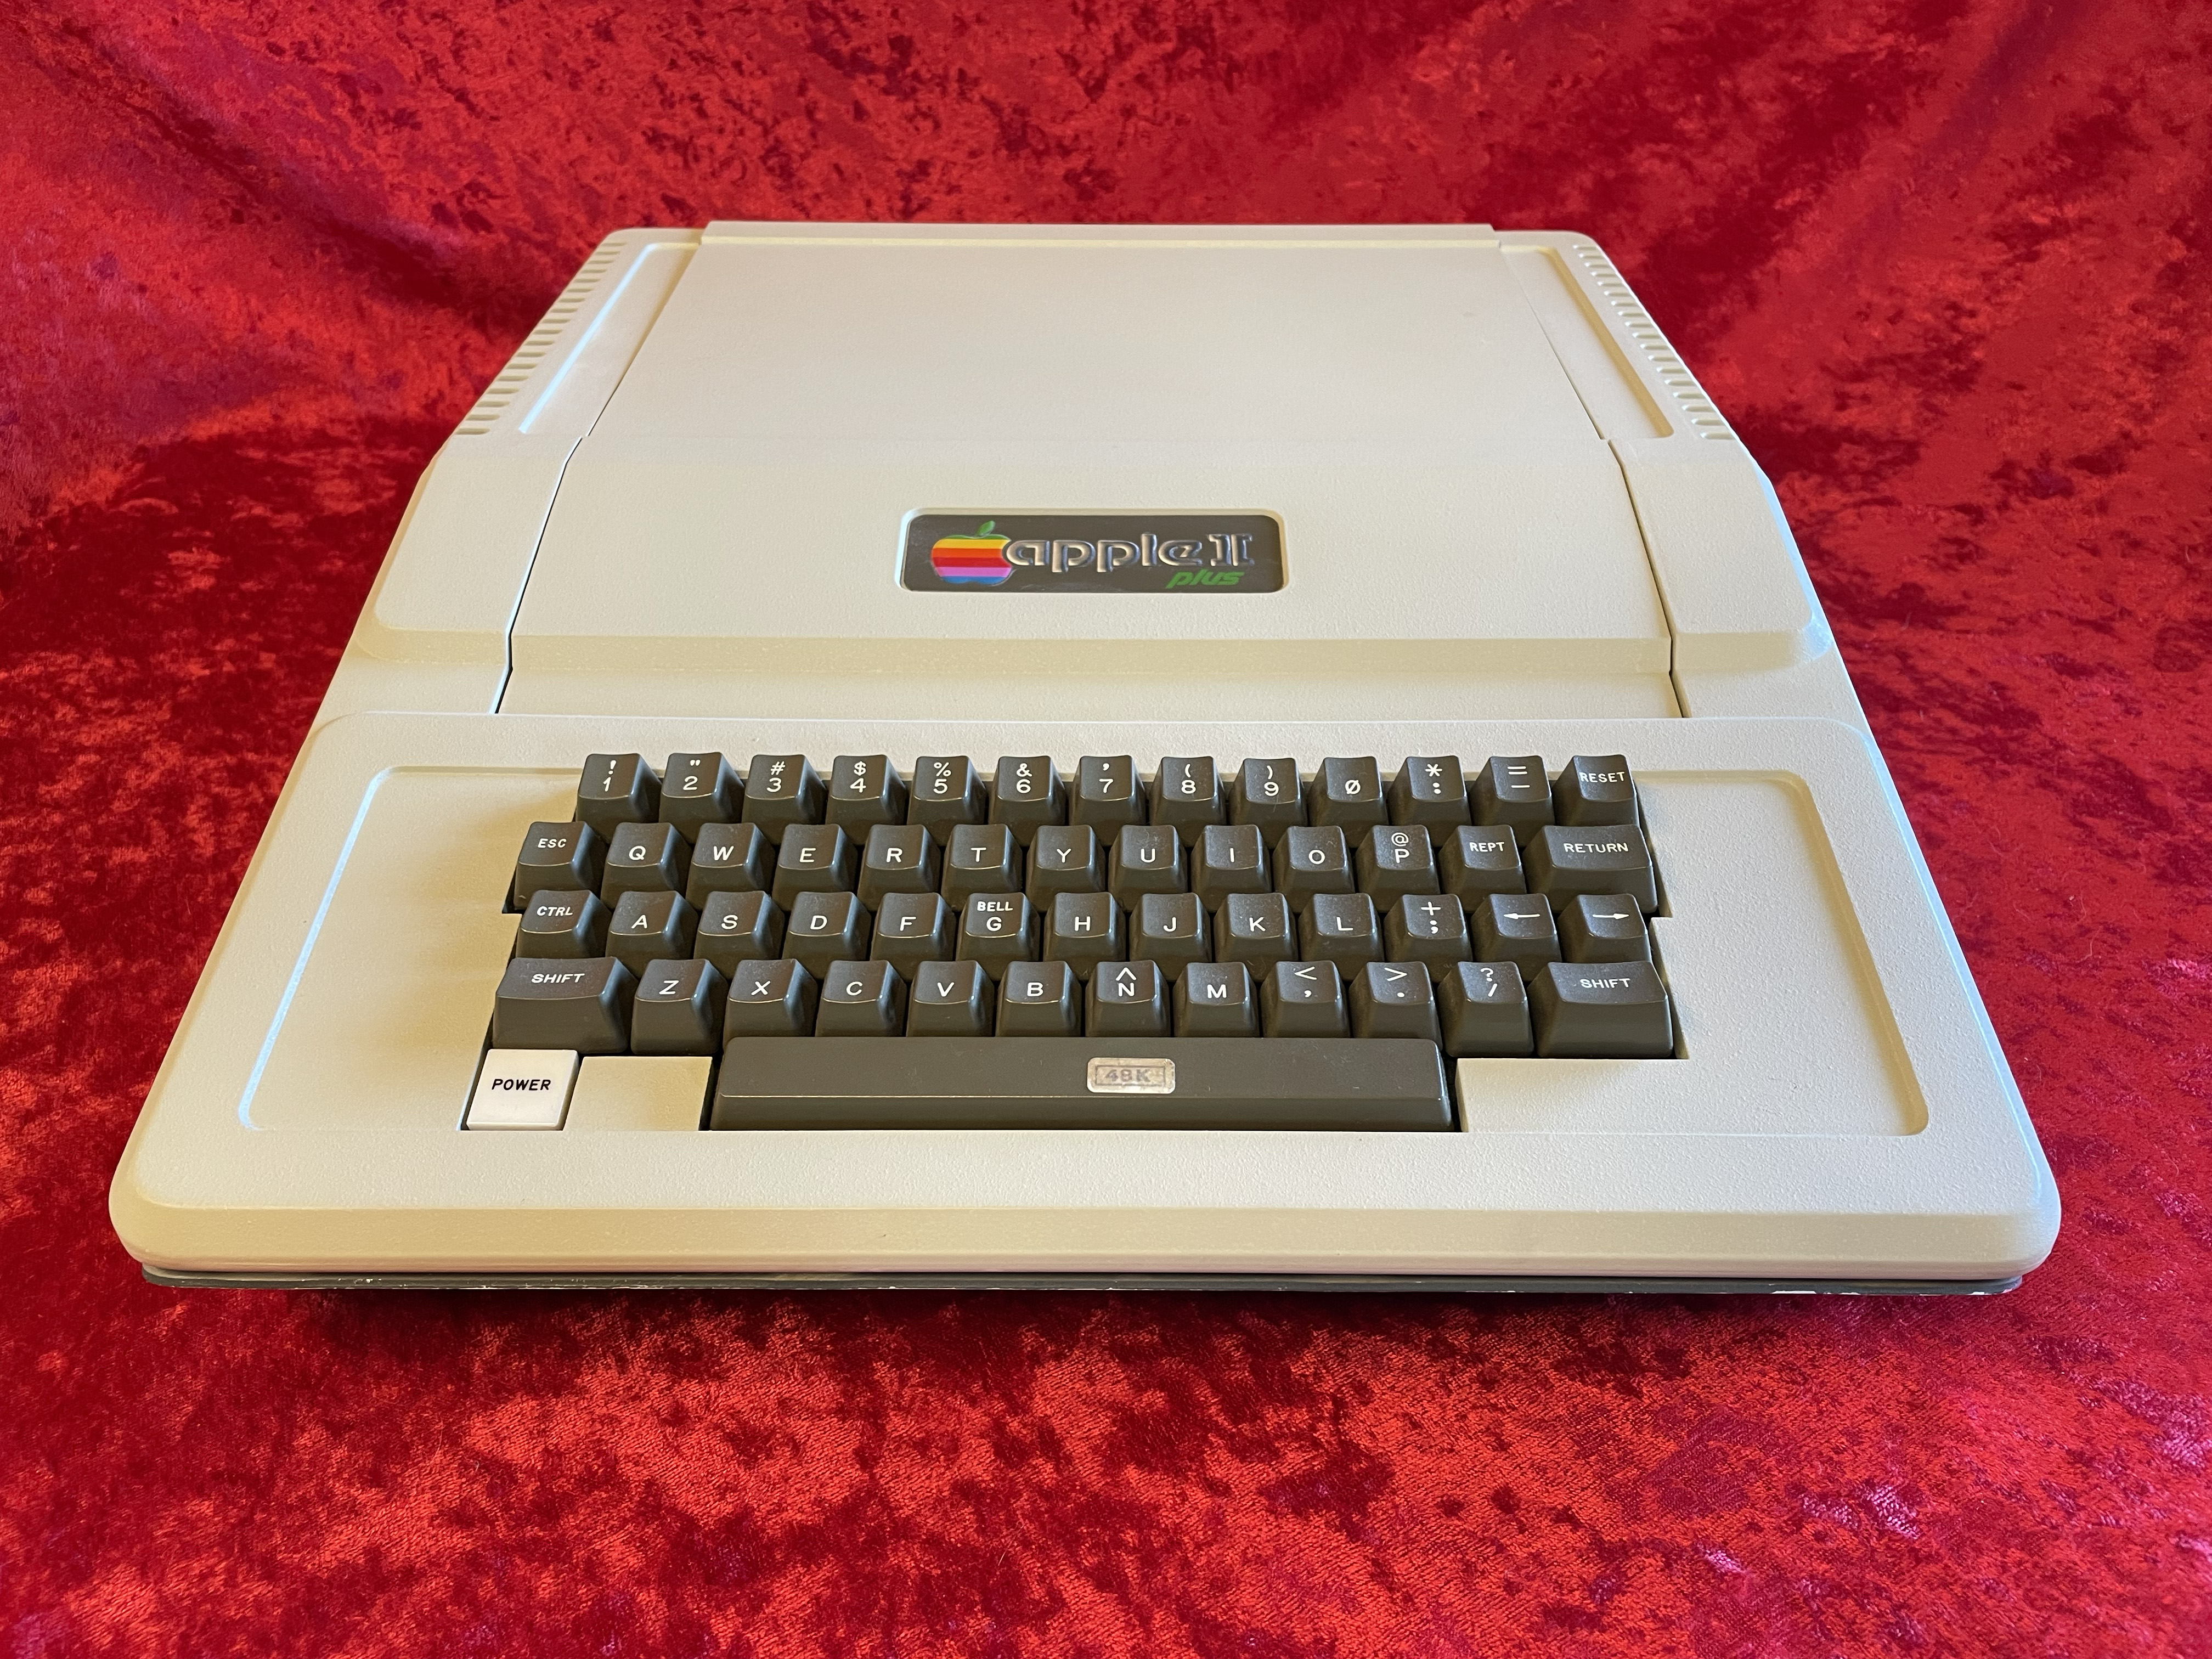 Apple II+ Front